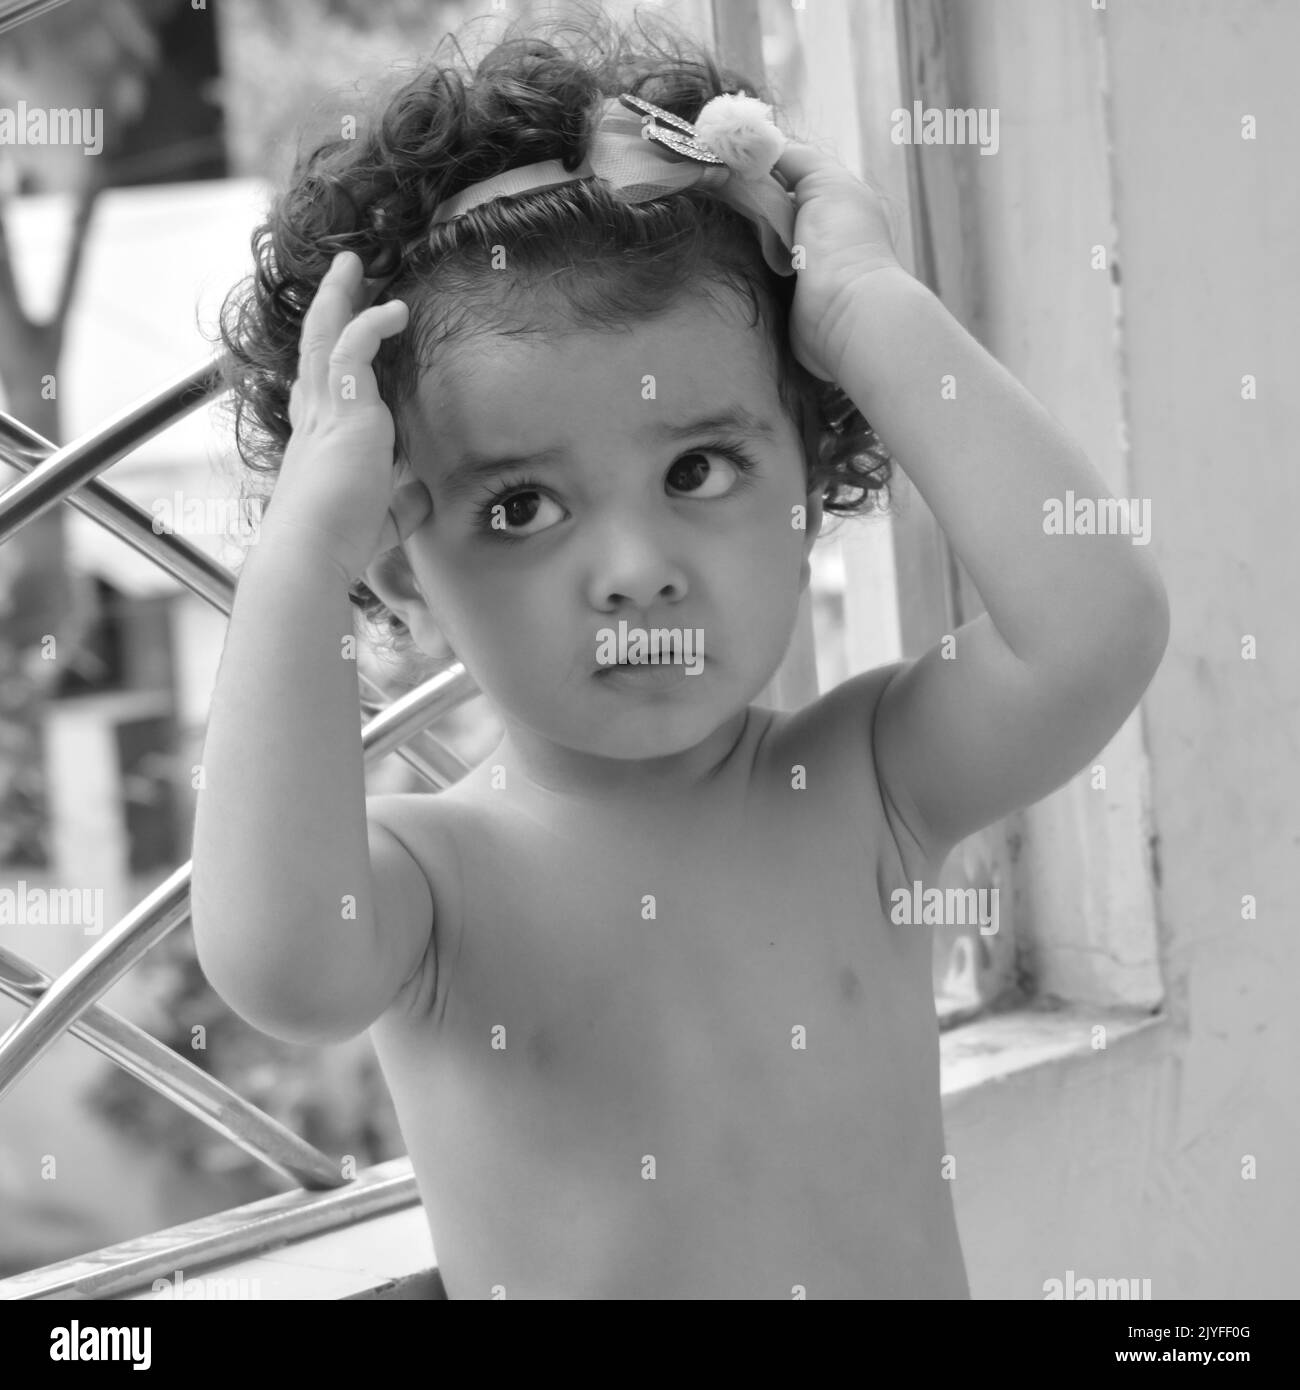 Zaffa Shivaay piccolo carino nel balcone di casa durante l'estate, fotoshoot piccolo dolce del ragazzo durante la luce di giorno, bambino godendo a casa durante il pho Foto Stock